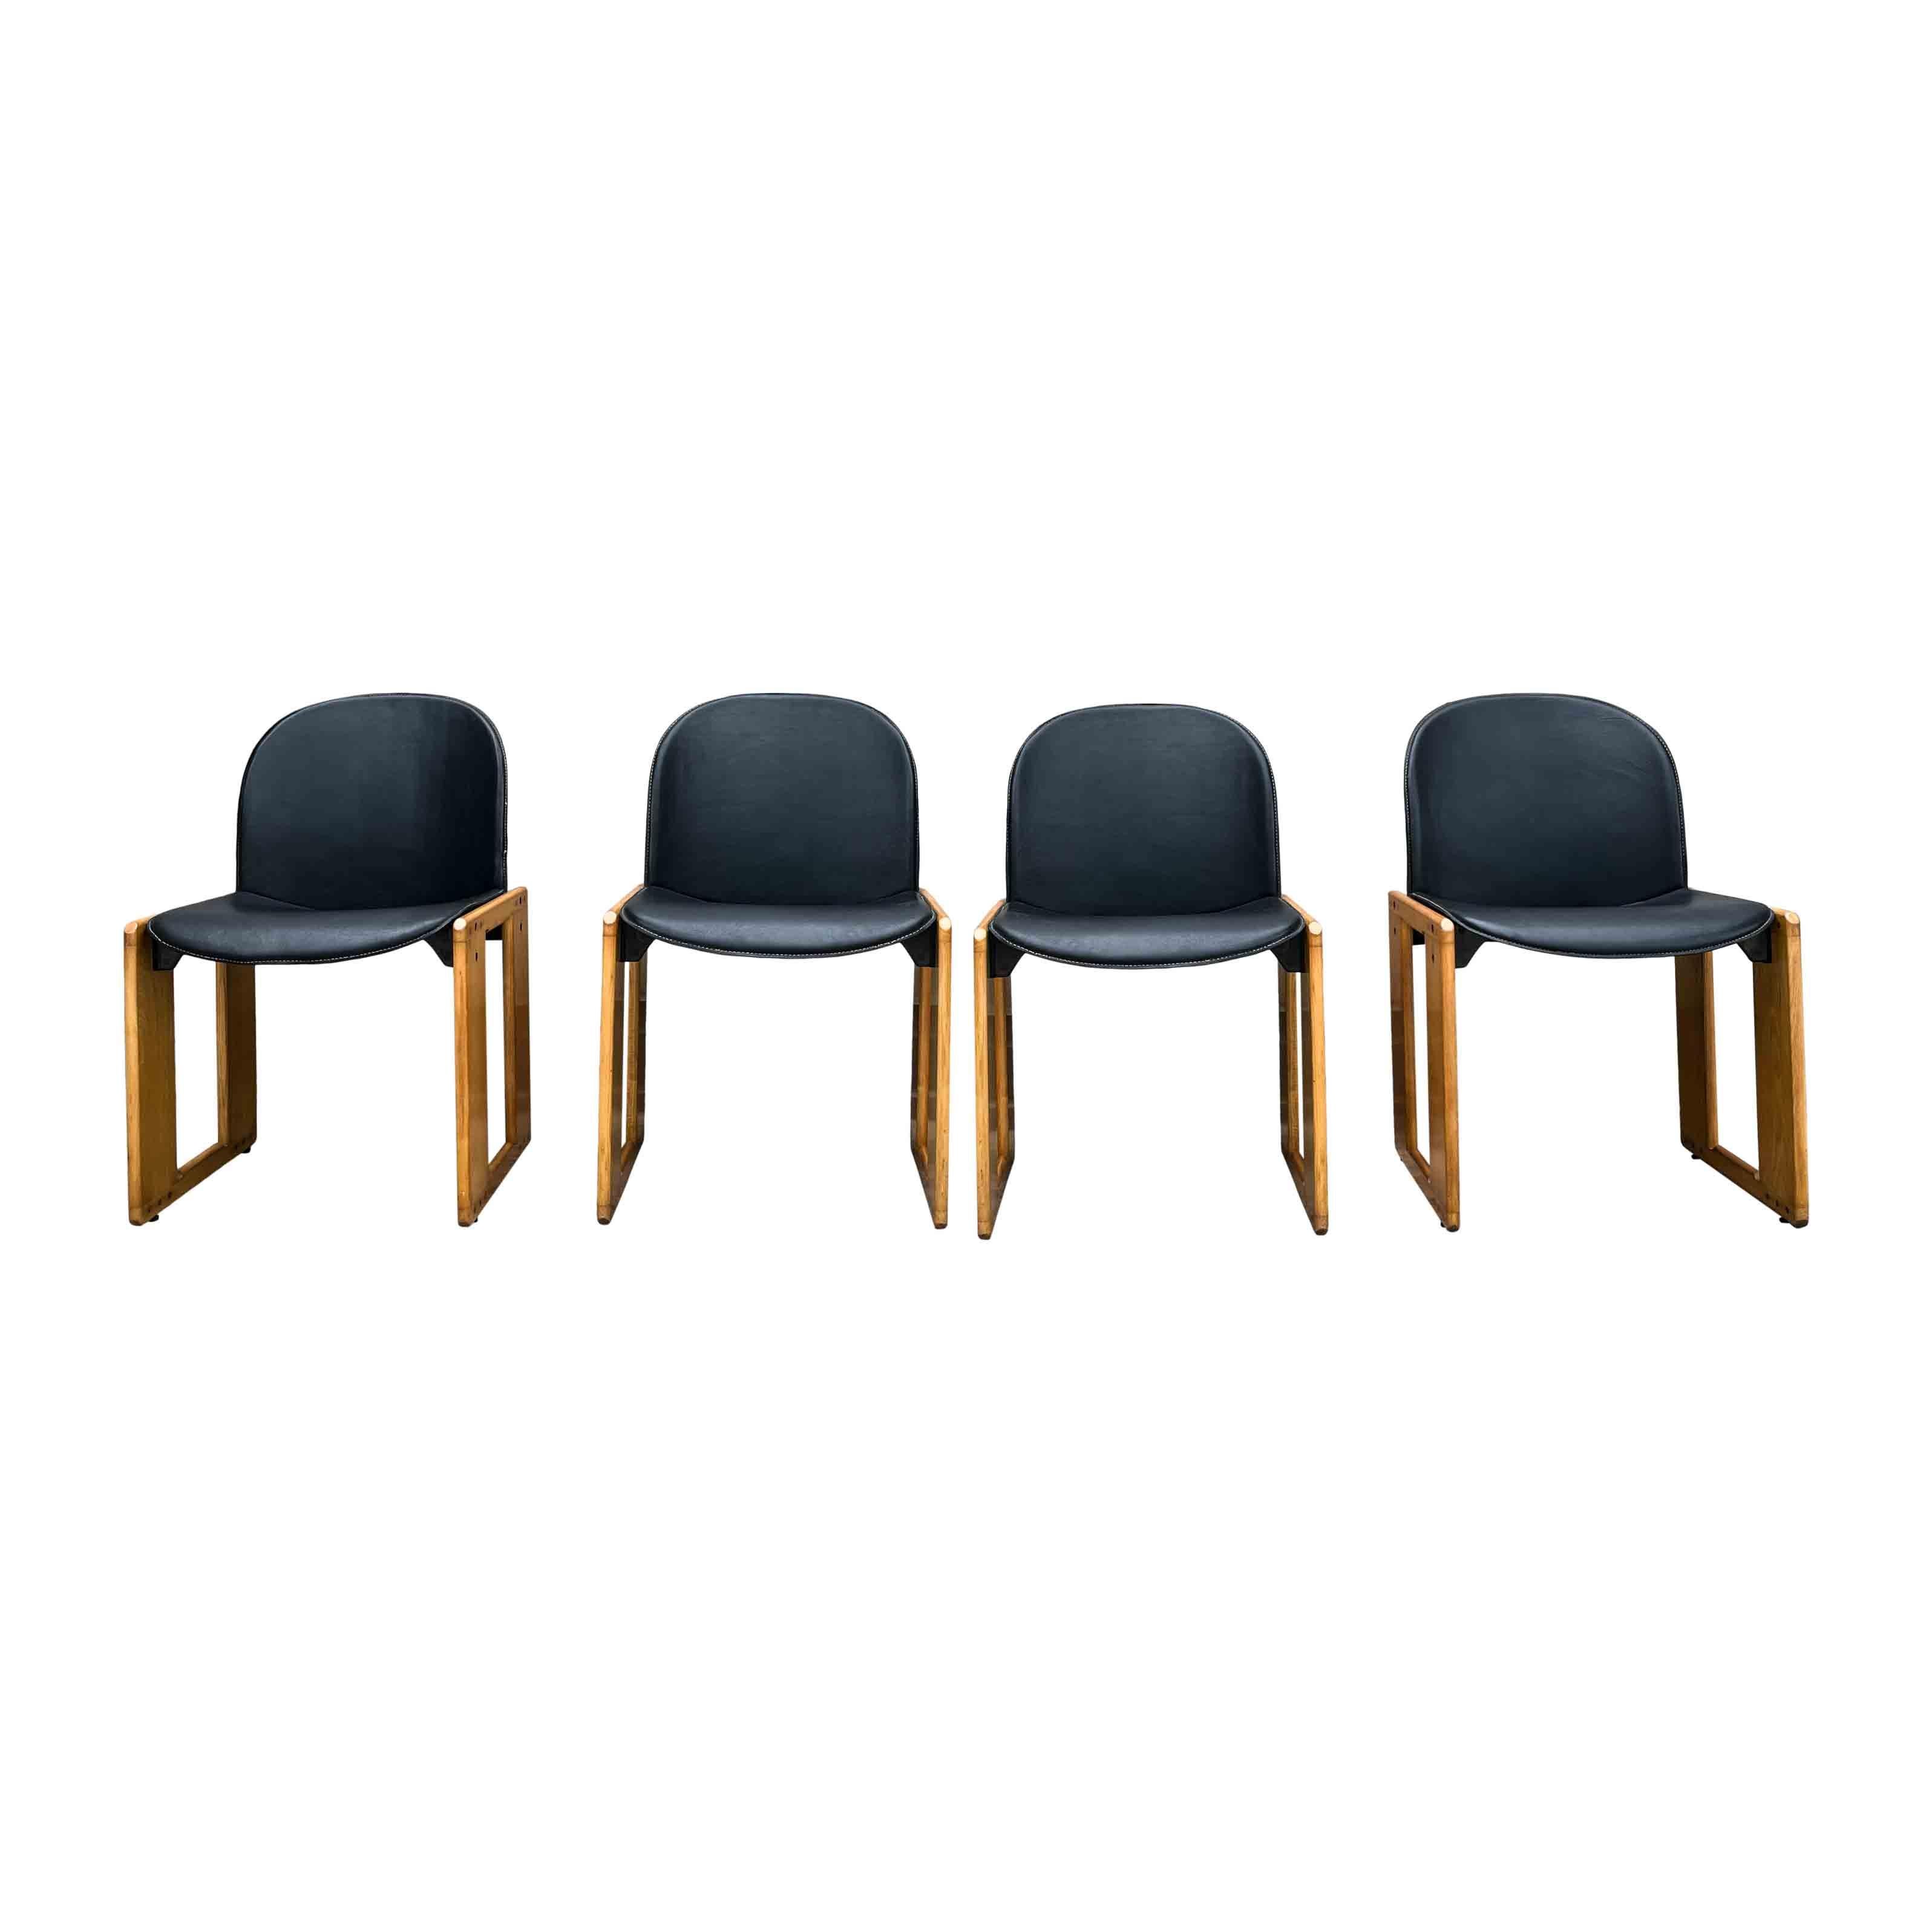 Ensemble de 4 chaises Dialogo conçues par Afra et Tobia Scarpa pour B&B Italia en 1973.

Les chaises sont composées d'une structure en frêne naturel et d'une assise et d'un dossier en fibre de verre revêtus de cuir noir.

La structure reprend le